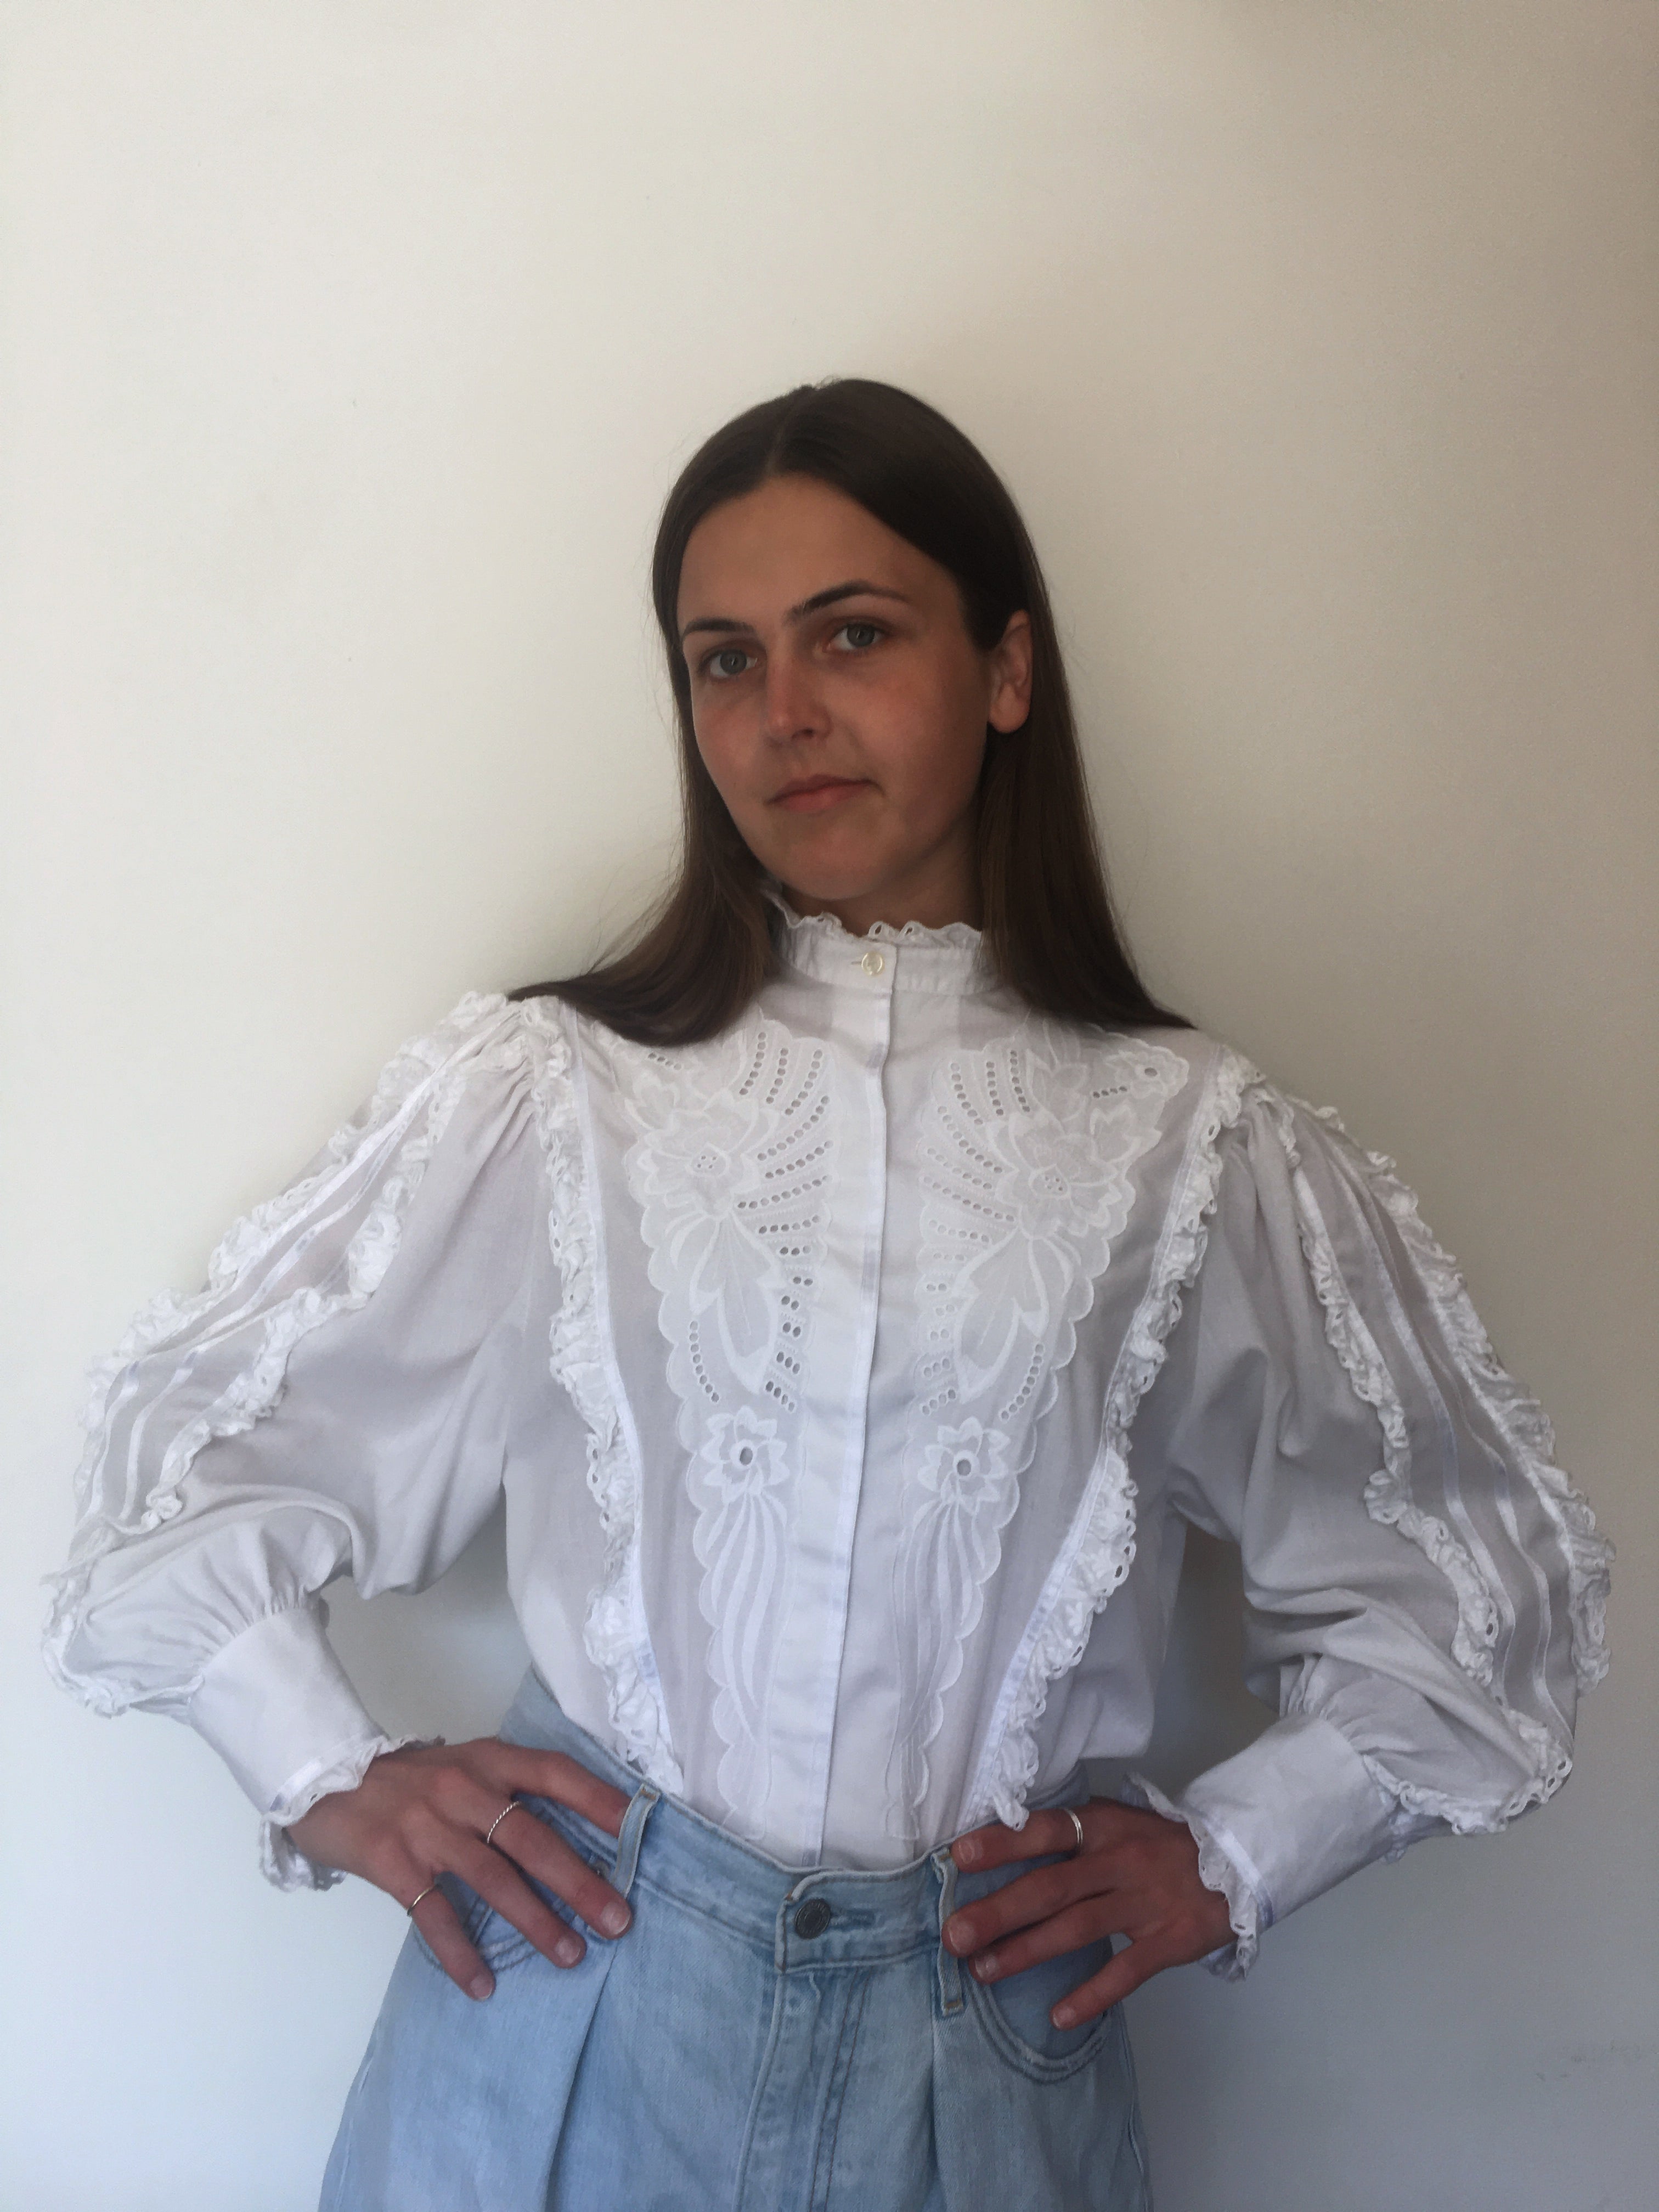 Statement vintage cotton blouse